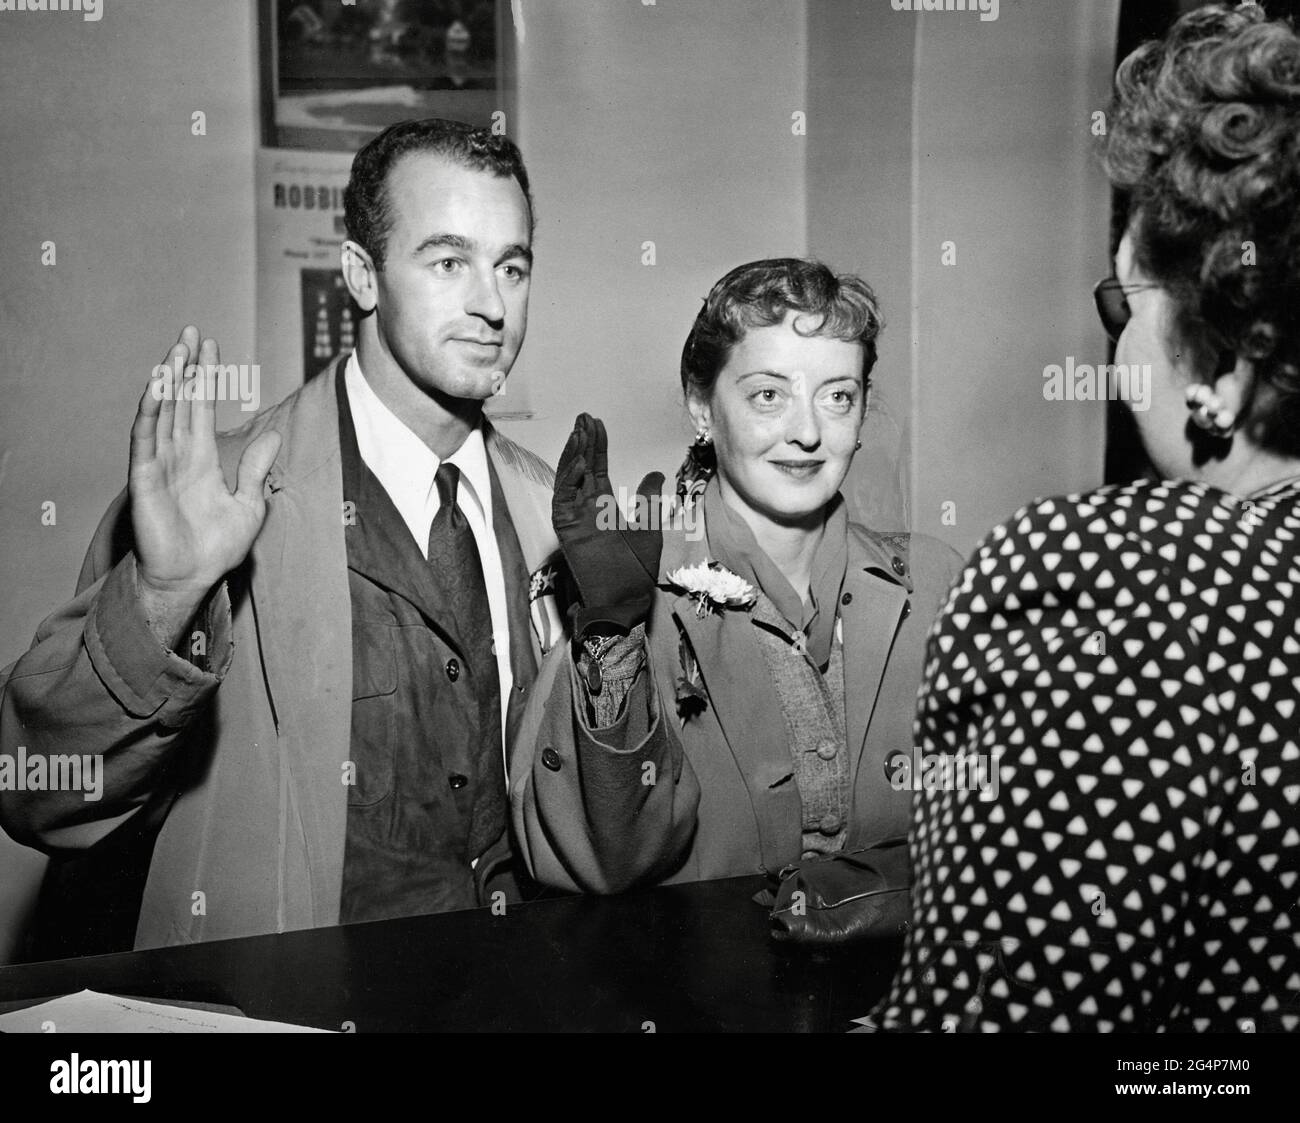 Bette Davis und William Grant Sherry erhalten ihre Heiratslizenz, 1945 /  Aktenzeichen # 34145-351THA Stockfotografie - Alamy